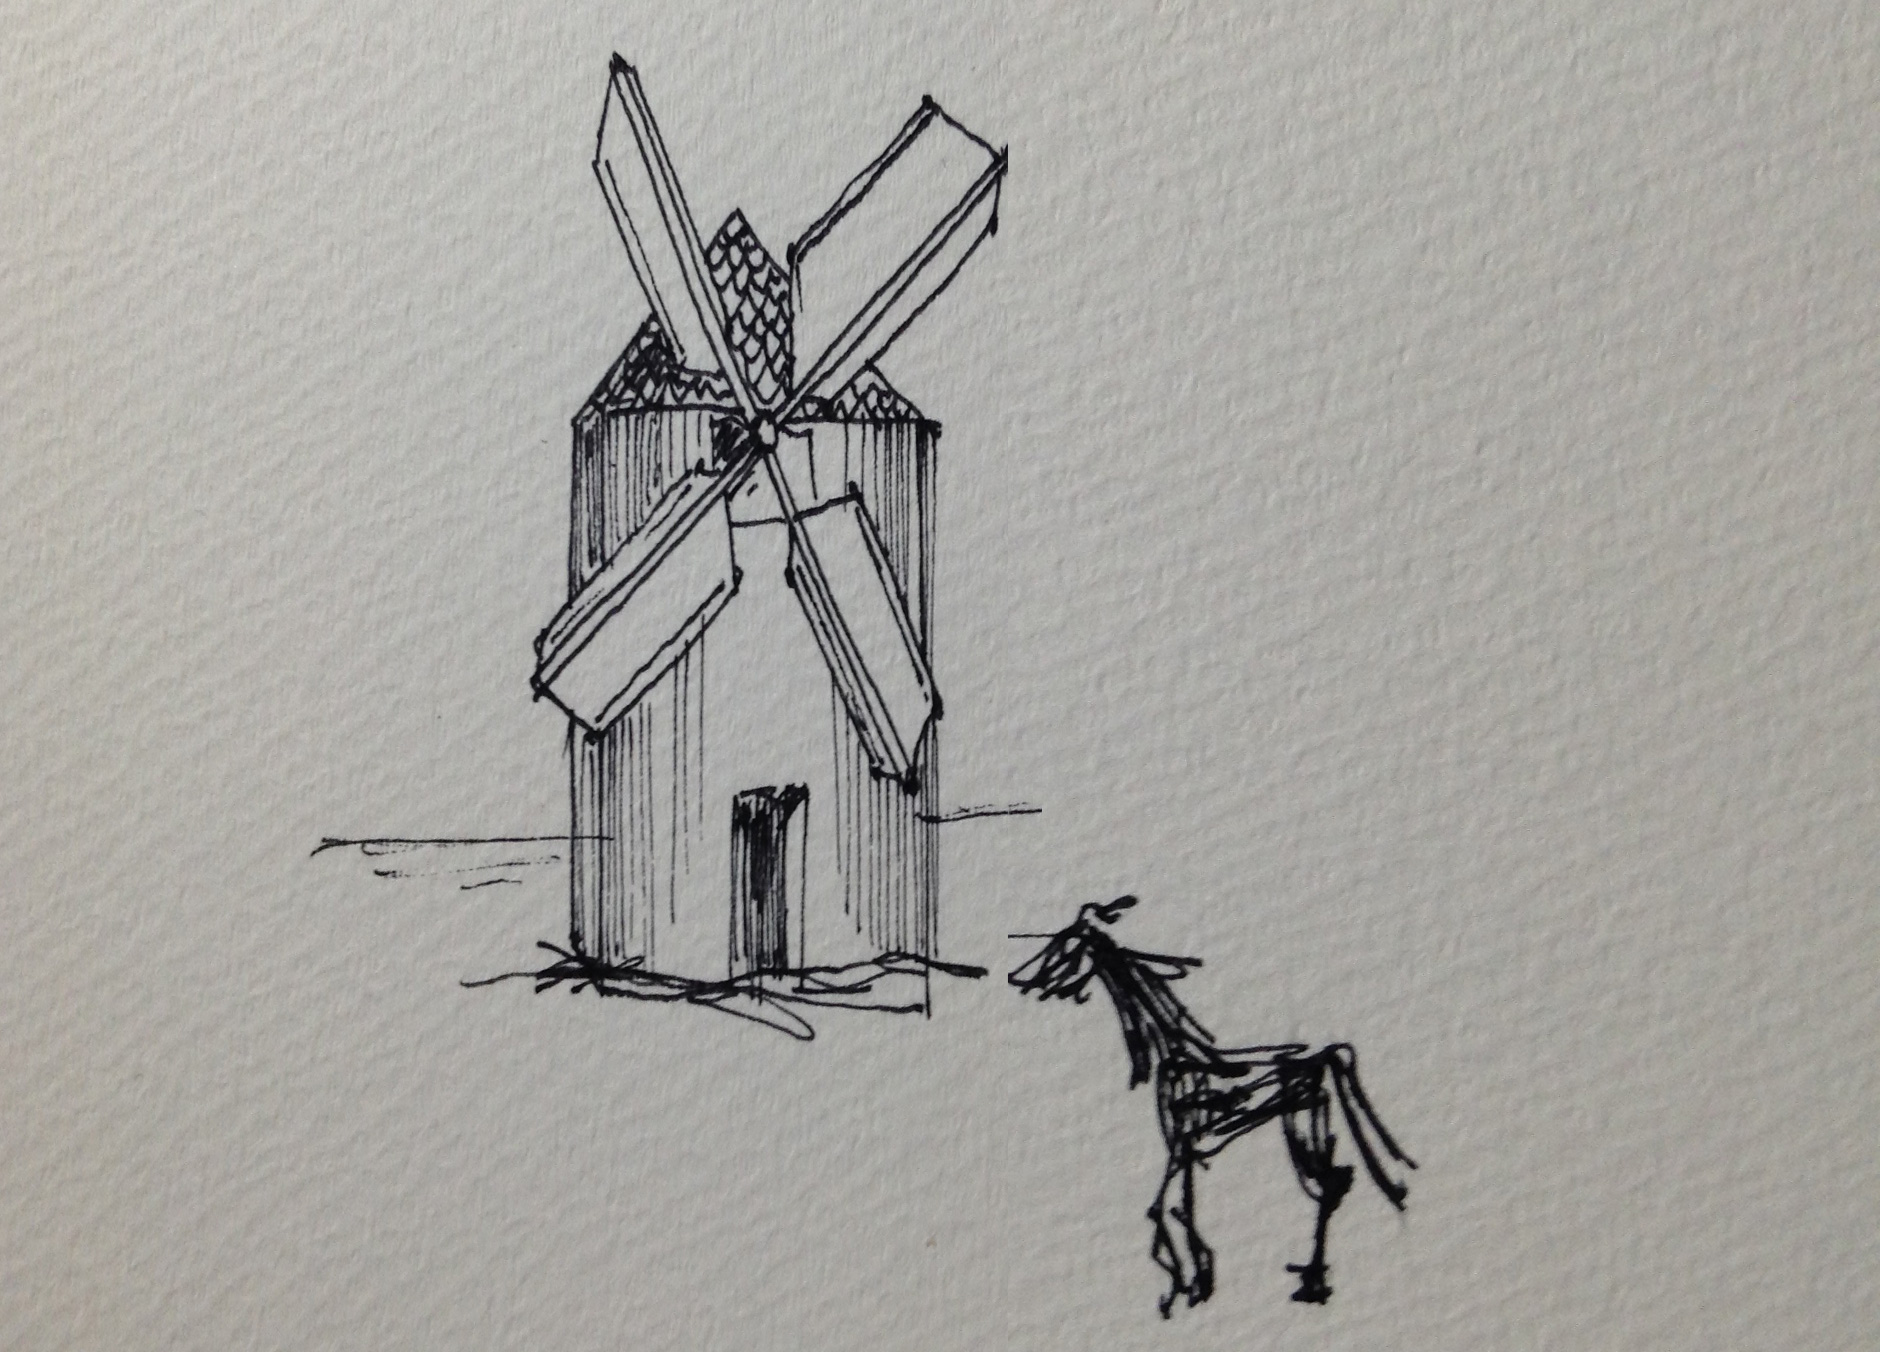 ドン・キホーテの印象深い風車と馬のイラスト